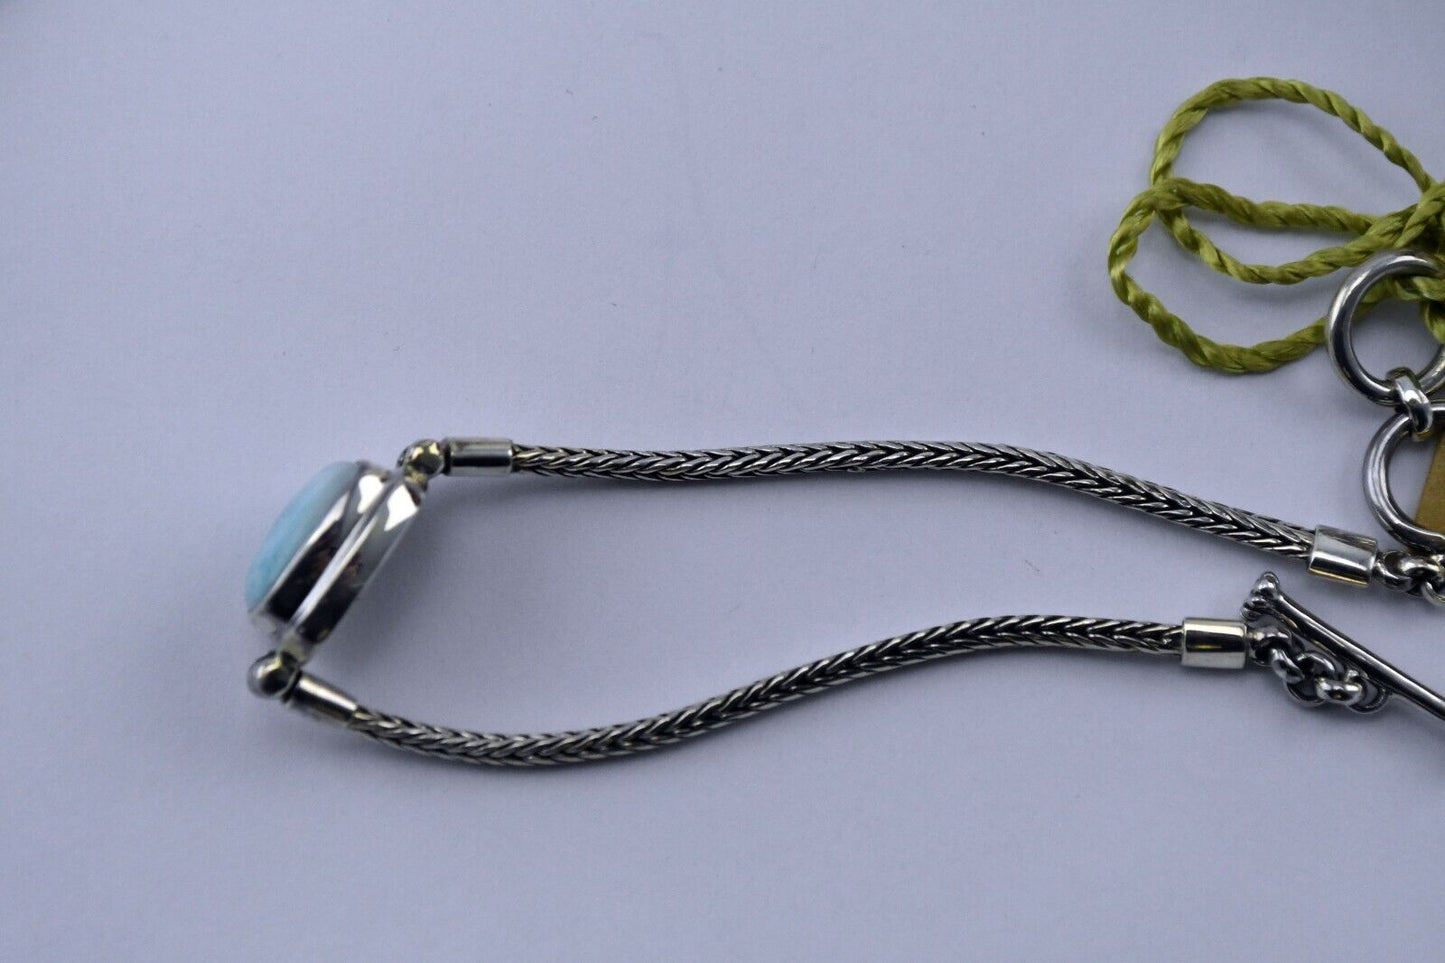 Marahlago Sterling Silver Blue Larimar Toggle Bracelet 7.5" w/Tags & Bag